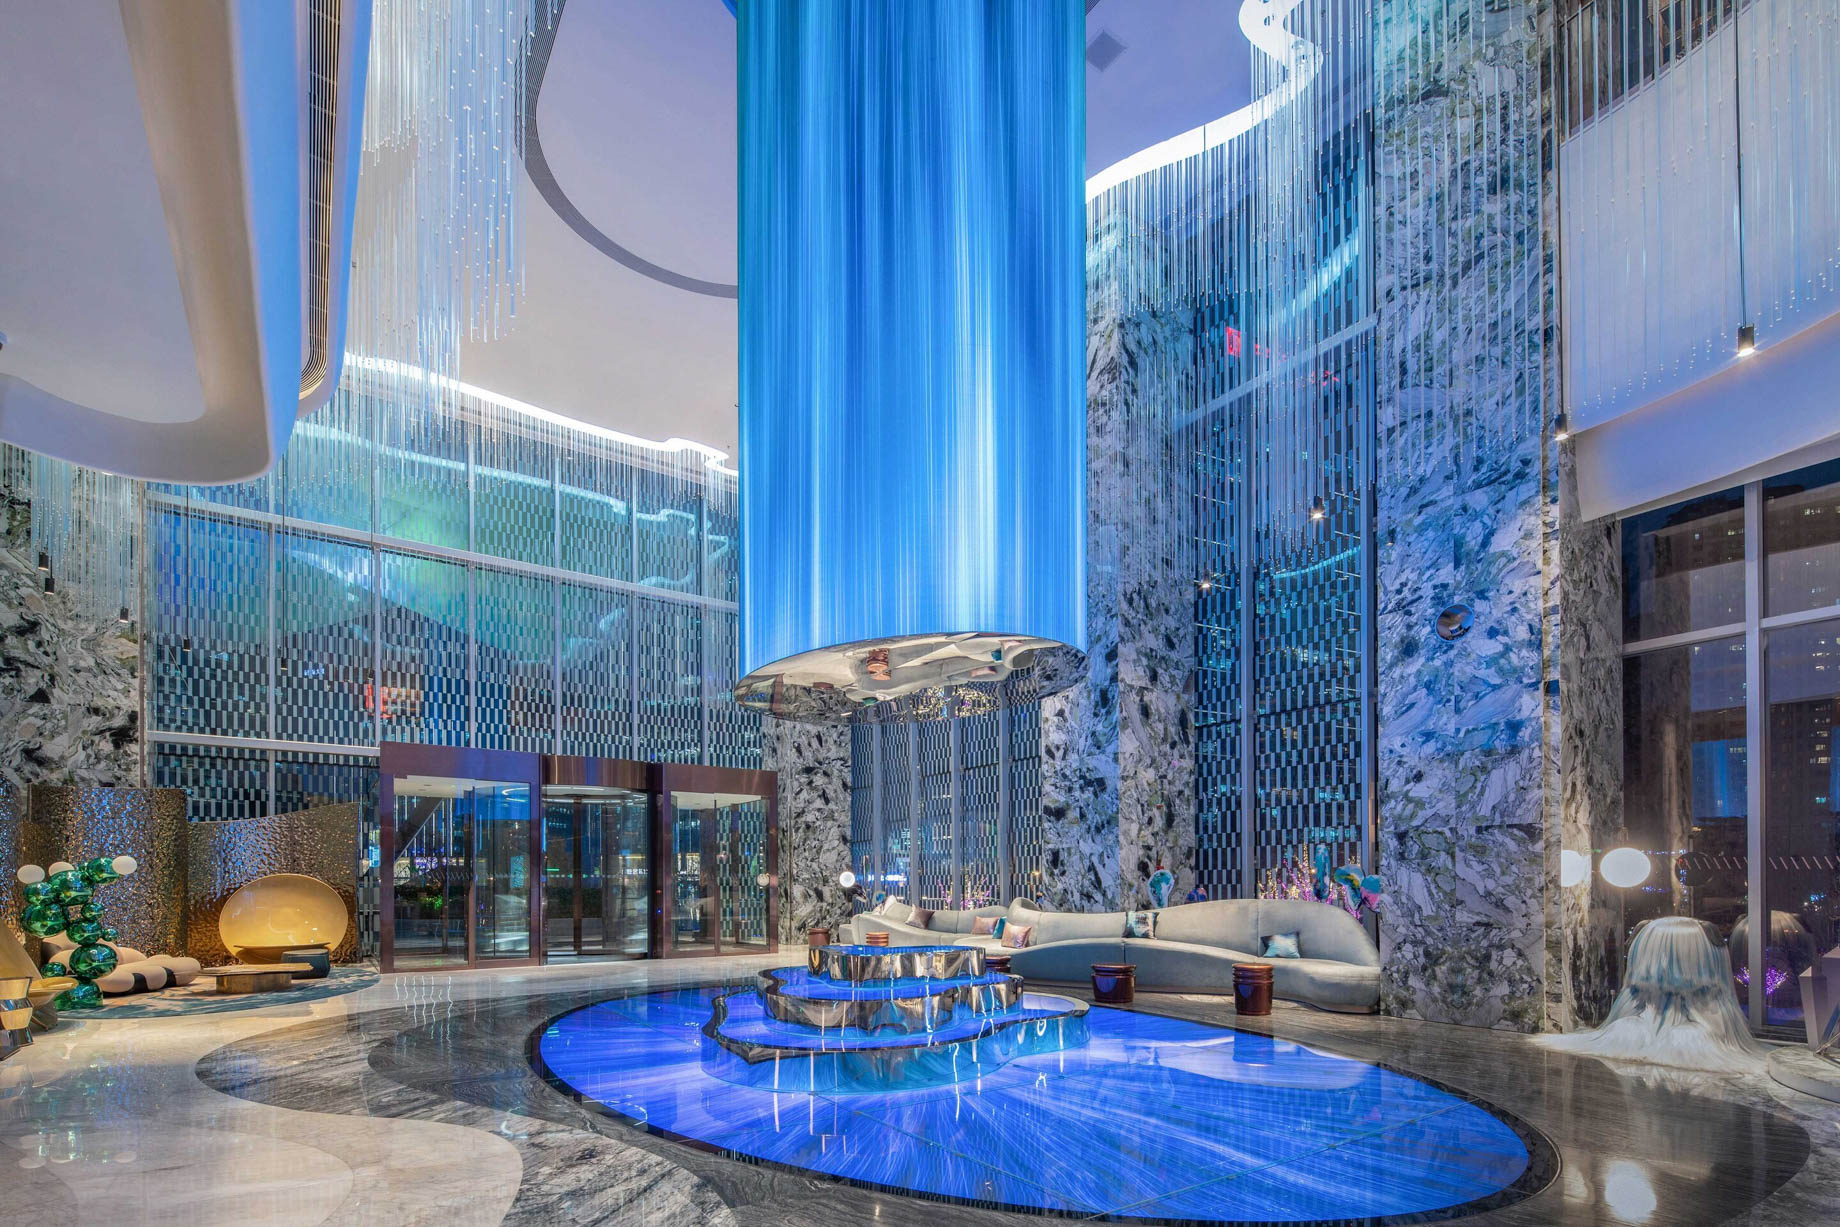 W Chengdu Hotel – Chengdu, China – Lobby TeamLab Decor